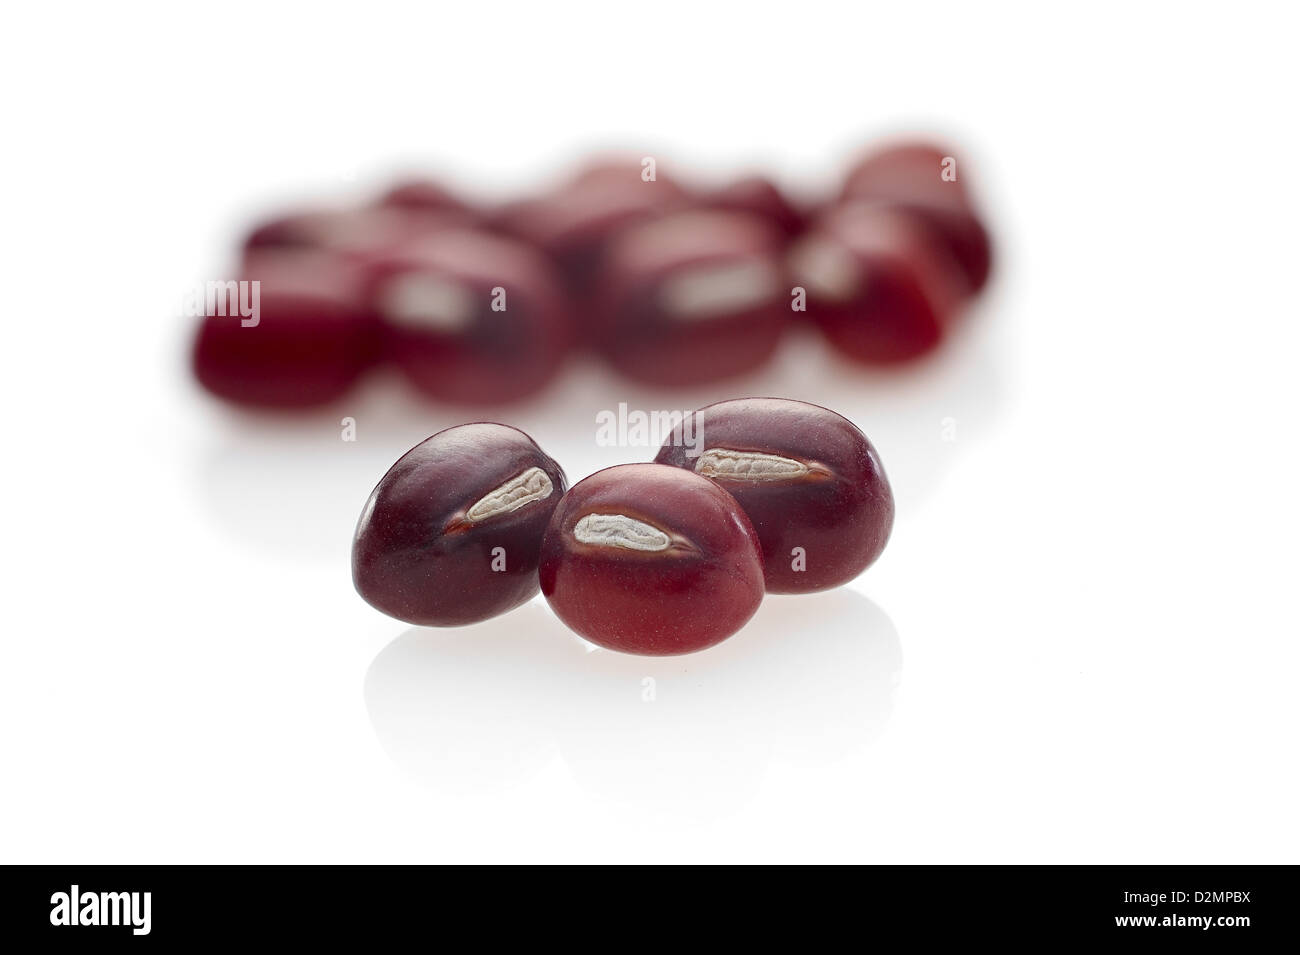 Adzuki Beans on seamless white background with shadow. Stock Photo